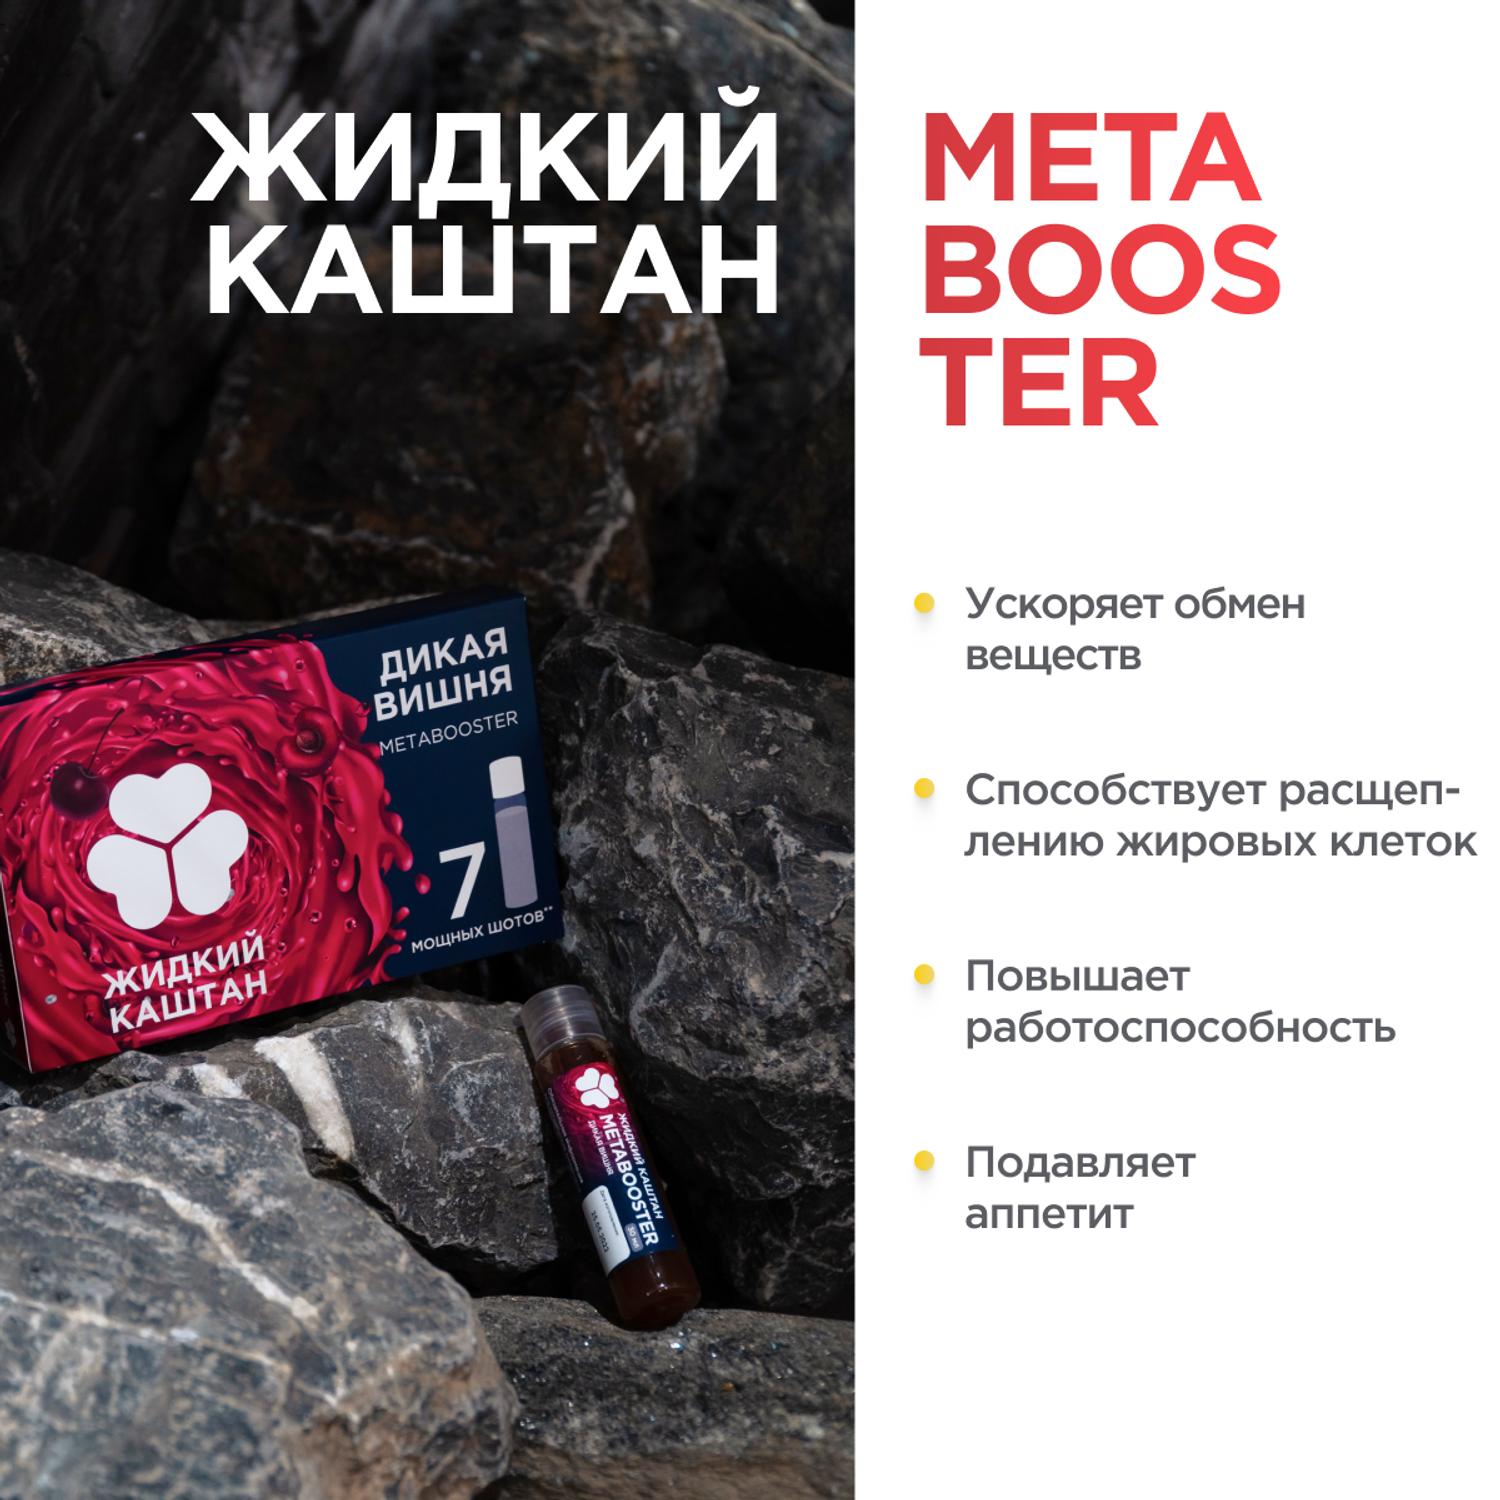 Метабустер Жидкий Каштан натруальный энергетик со вкусом вишни - фото 2